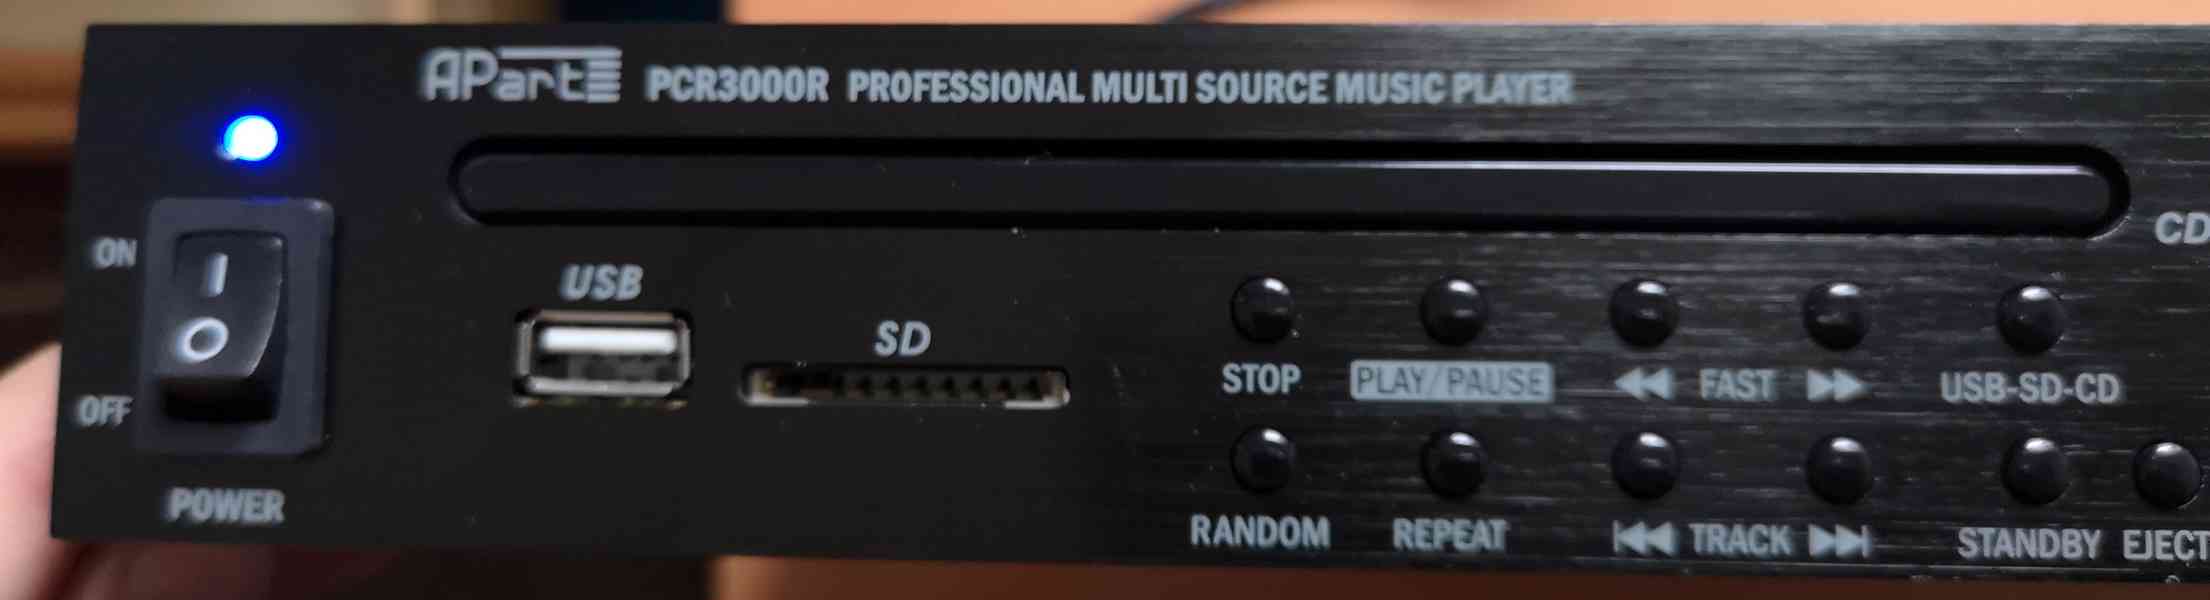 Apart PCR3000R - USB, CD, Radio DAB+, FM - profi audio - foto 5